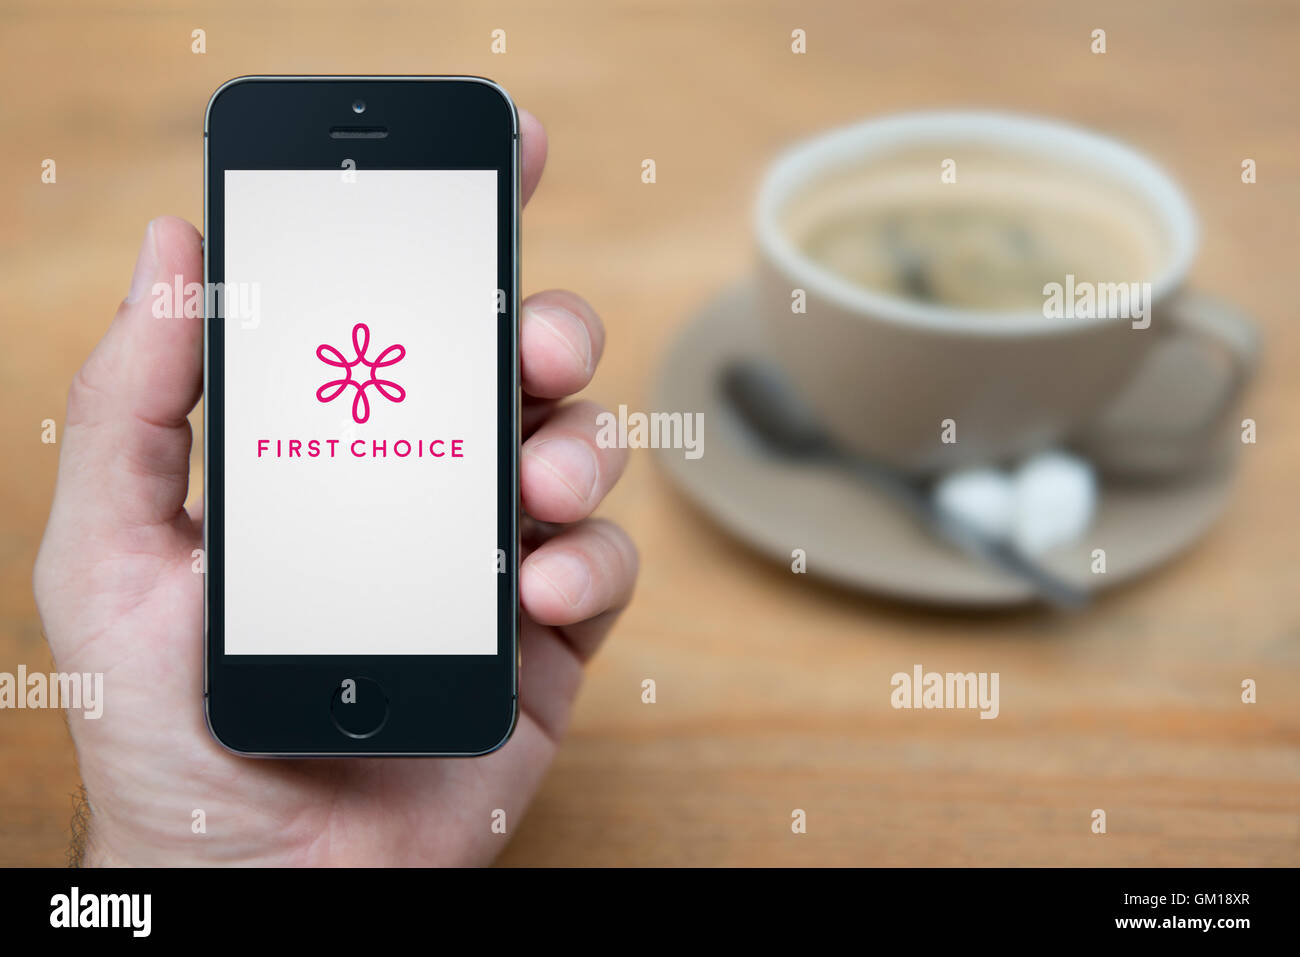 Un hombre mira el iPhone que muestra el logotipo de First Choice, mientras se sentó con una taza de café (uso Editorial solamente). Foto de stock